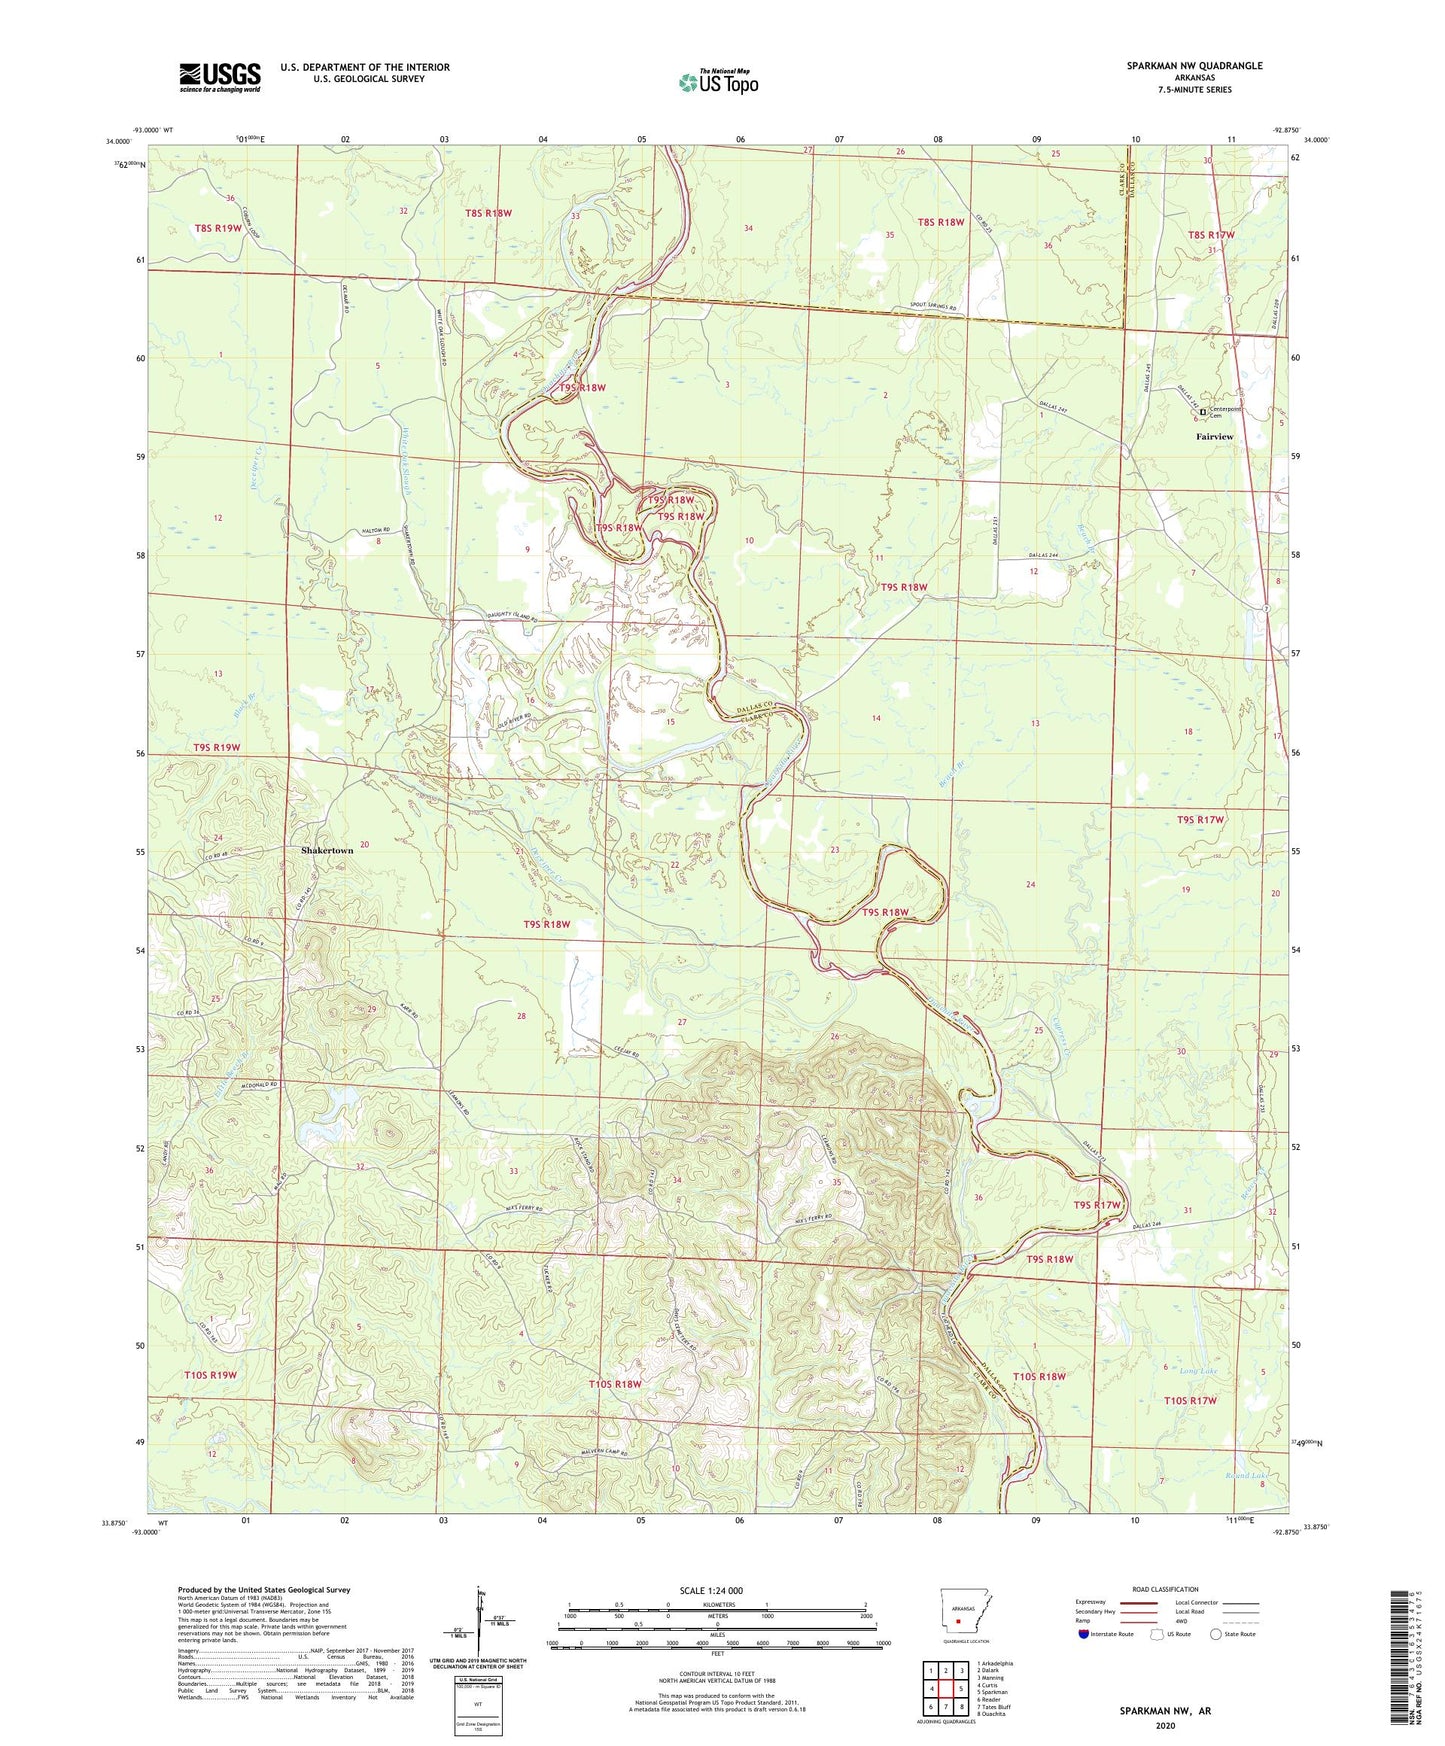 Sparkman NW Arkansas US Topo Map Image